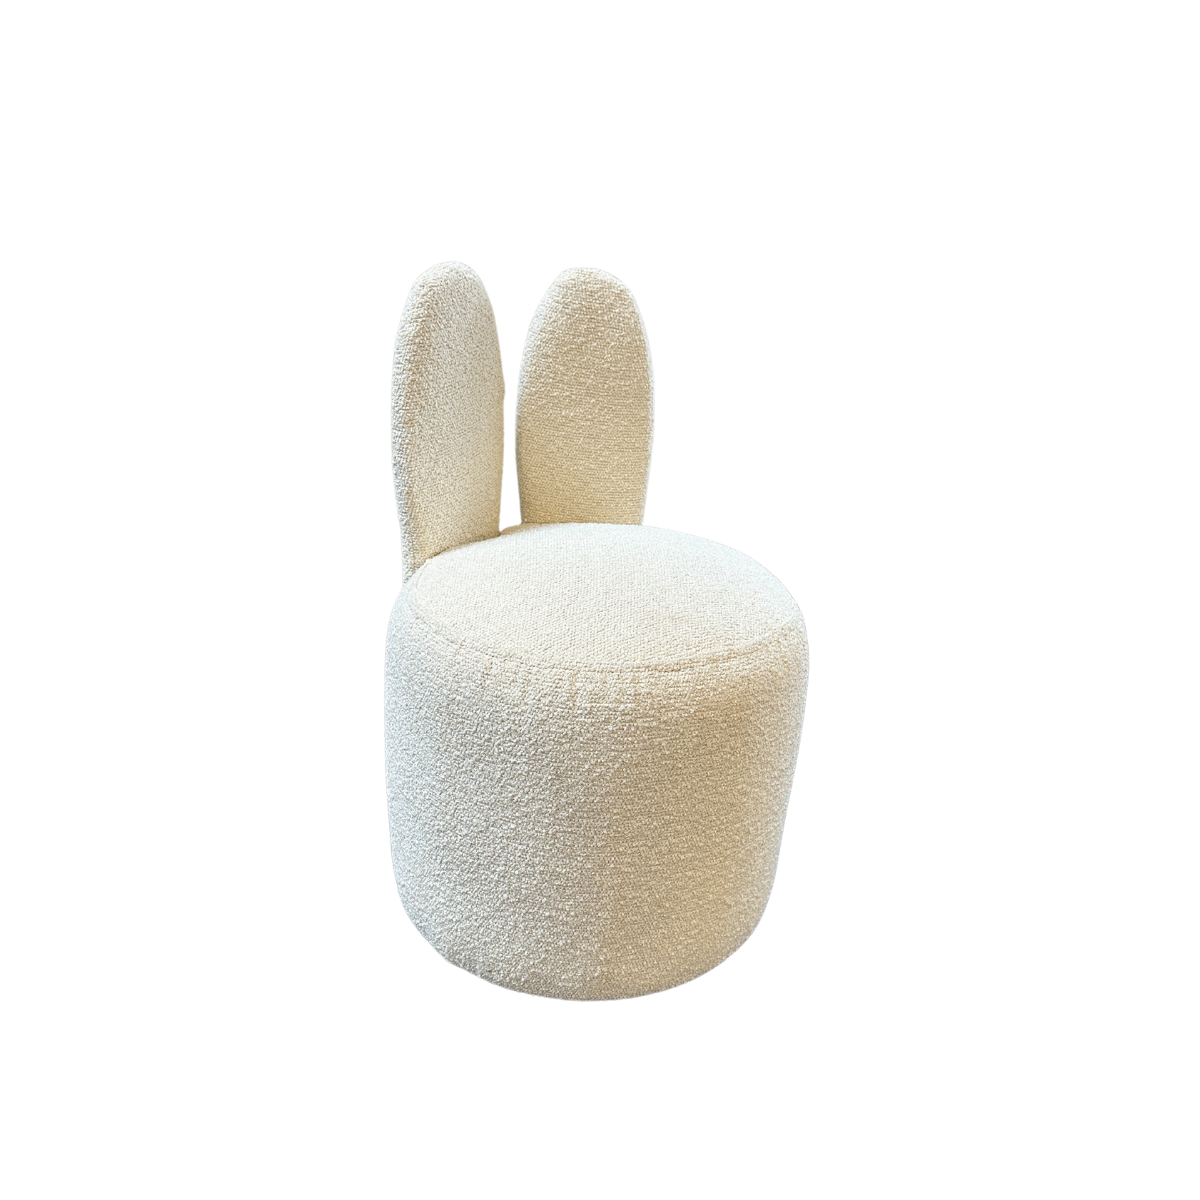 Lymoné | Bunny chair